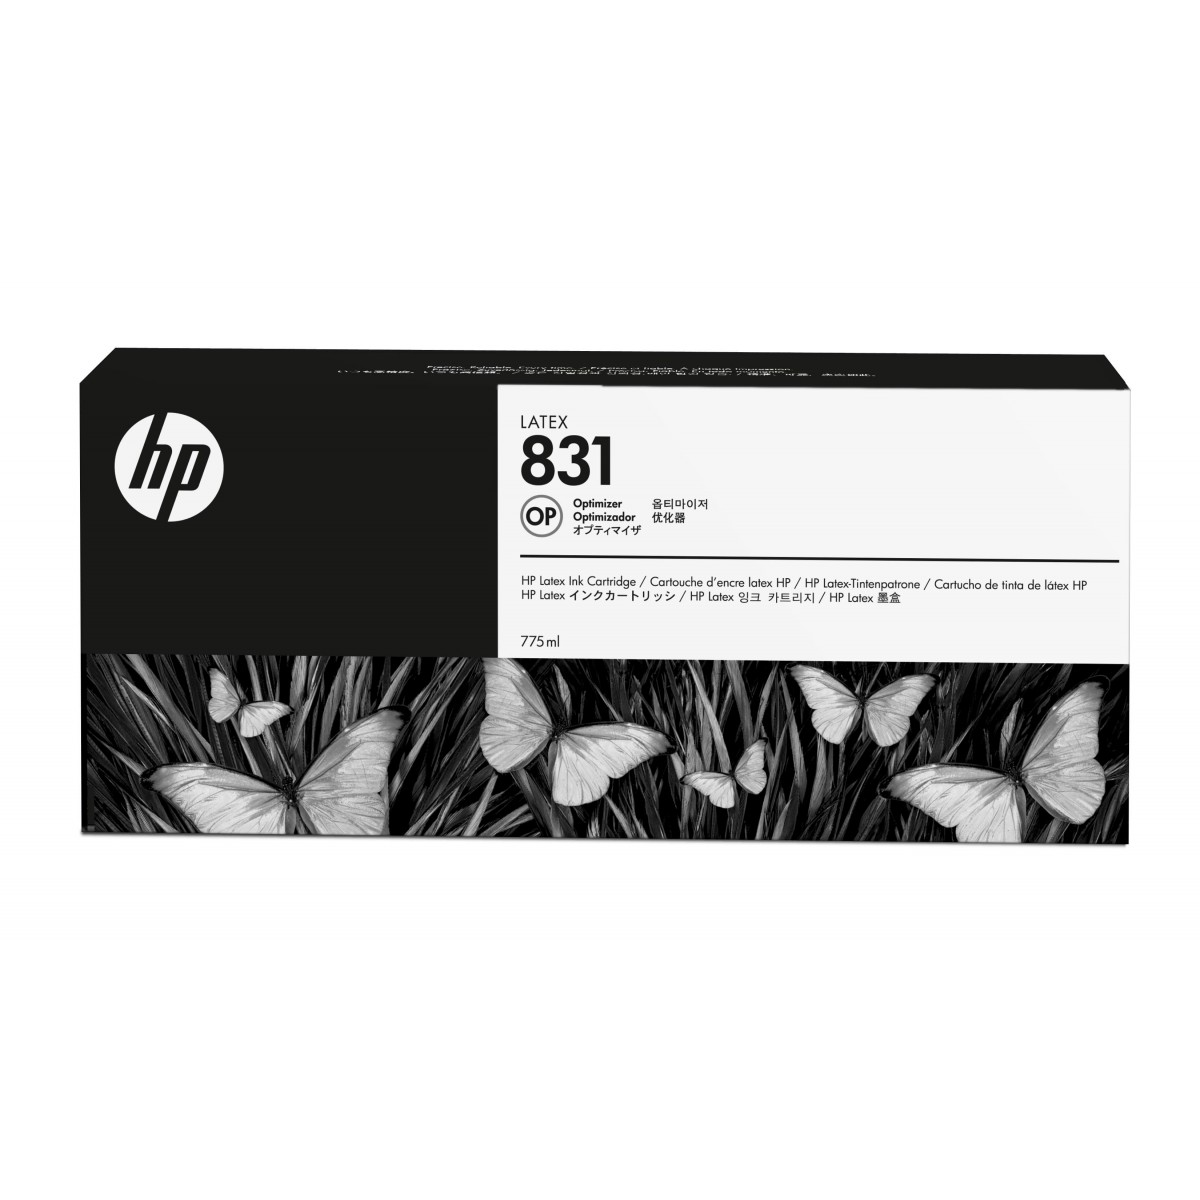 HP 831 - Original - Latex - HP - HP Latex 310 - 330 - 360 - 560 - 570 - 315 - 335 - 1 pc(s) - 775 ml